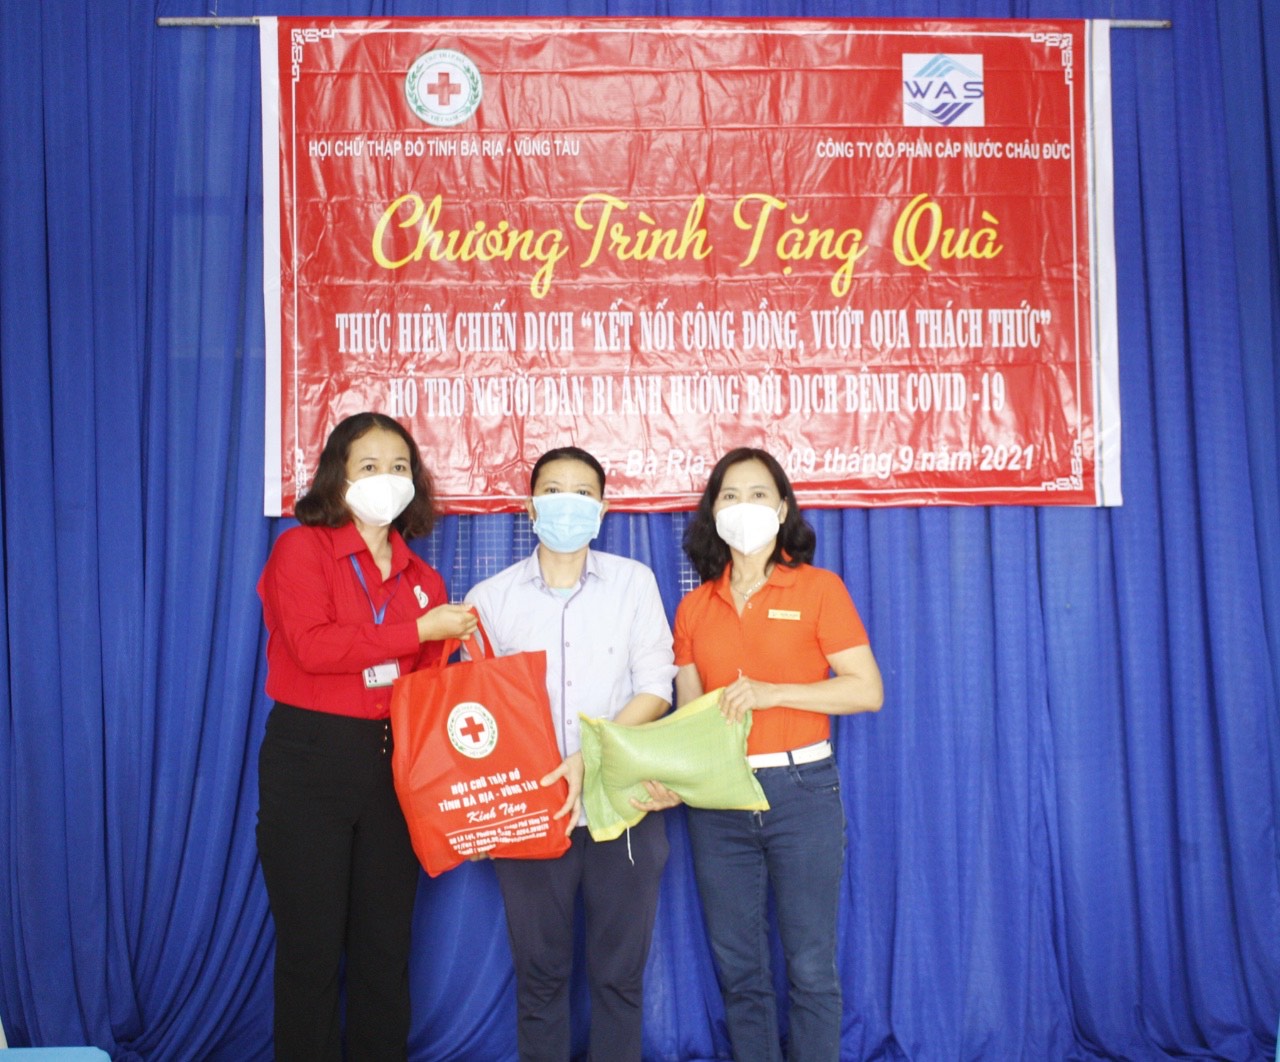 Bà Hà Thị Việt Bắc, Phó Chủ tịch Hội Chữ thập đỏ tỉnh cùng đại diện Công ty CP Cấp nước Châu Đức trao quà tới người dân trên địa bàn xã Tân Hưng (TP. Bà Rịa).